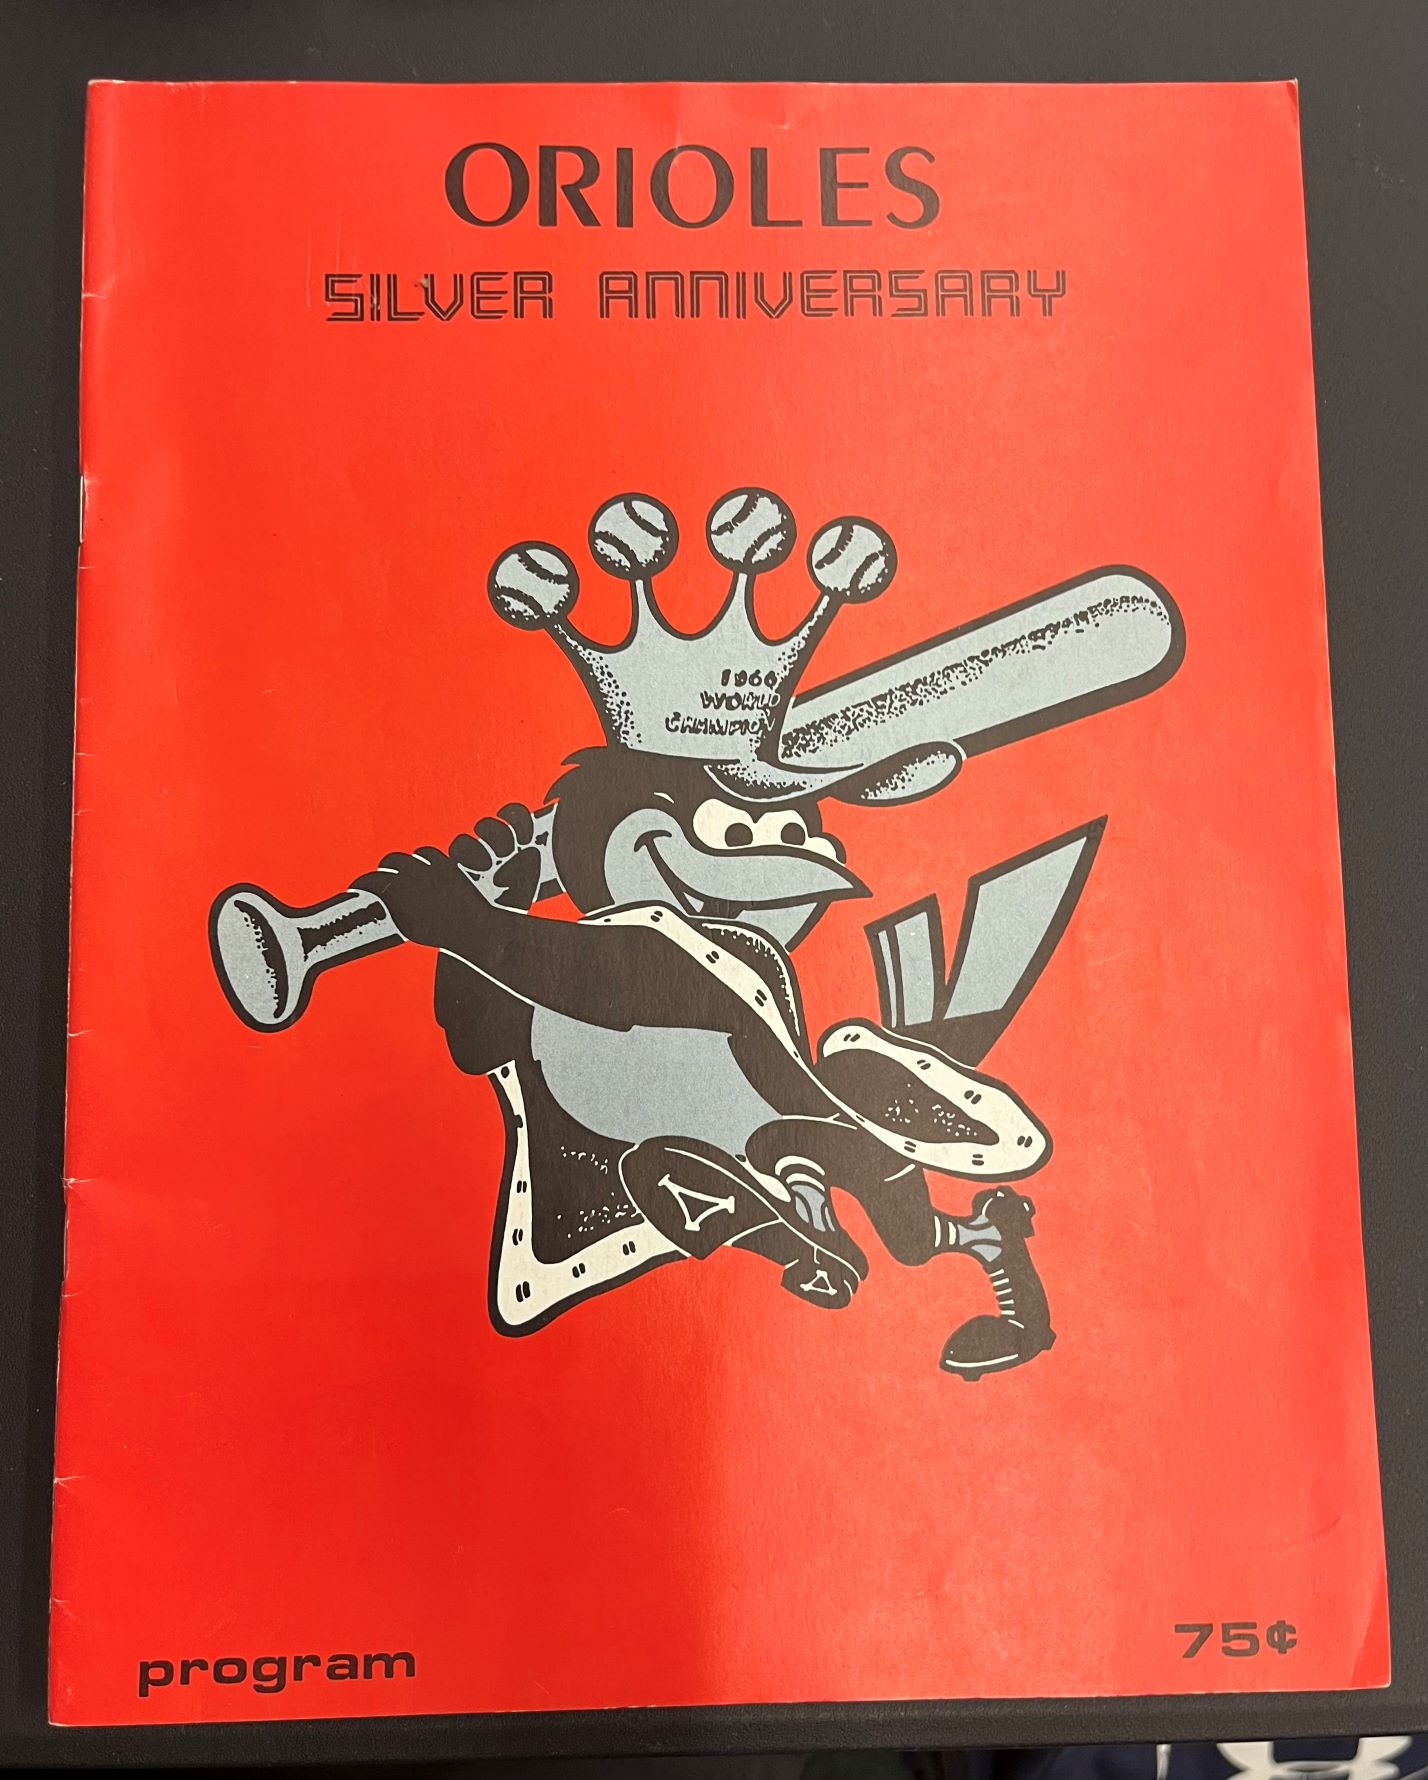 1966 Baltimore Orioles Silver Anniversary Program